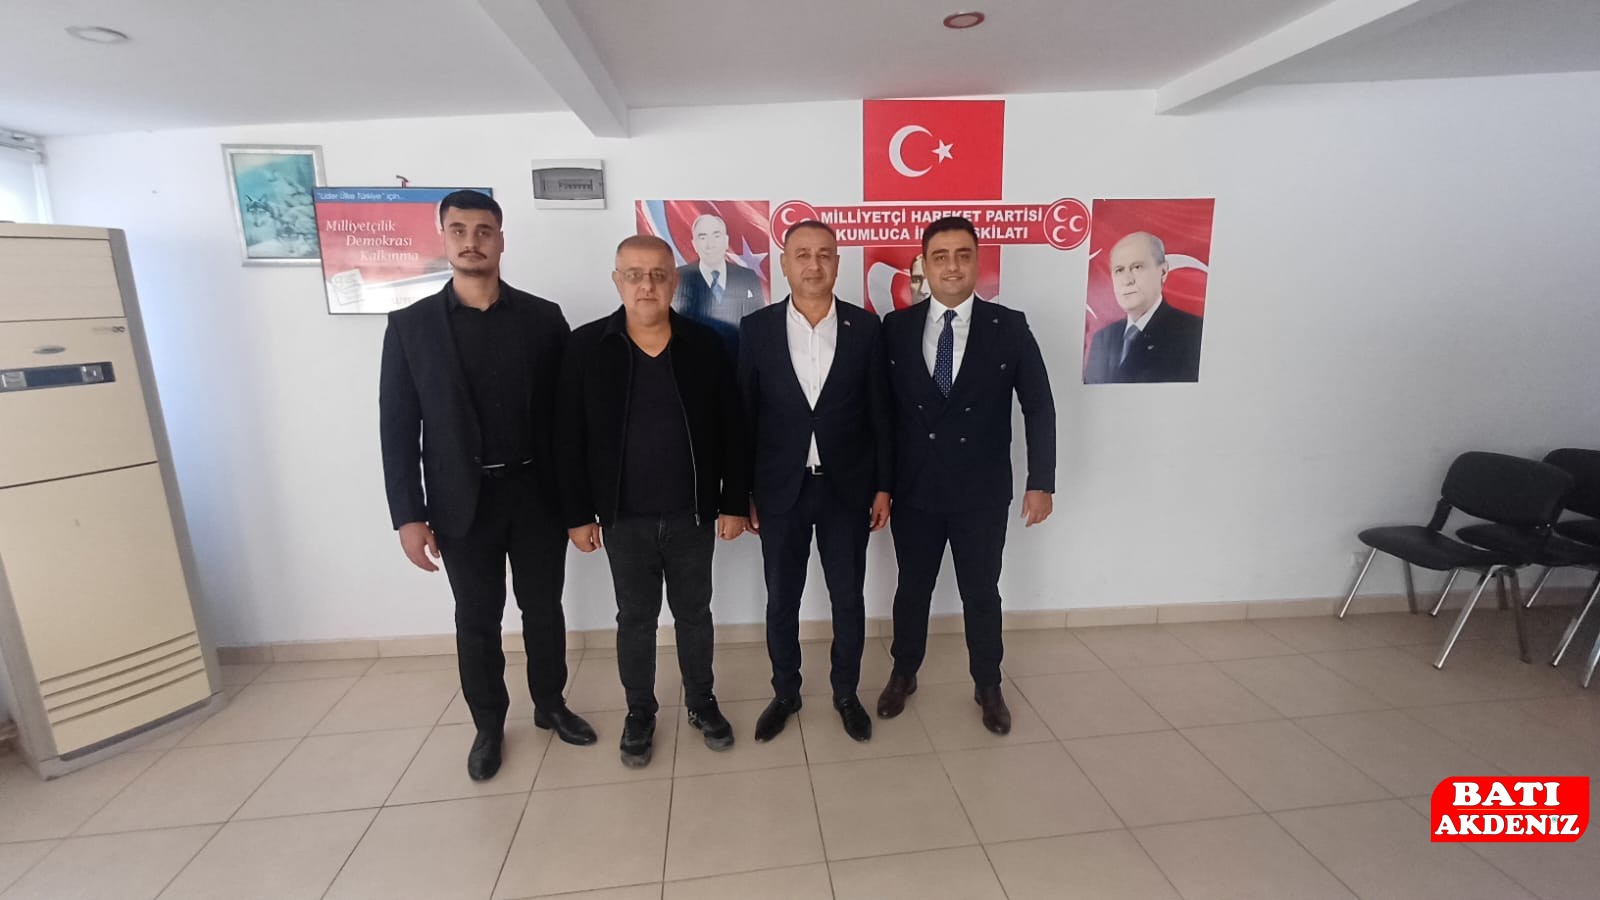 Antalya’nın Kumluca ilçesinde Milliyetçi Hareket Partisi ilçe başkanlığına adaylık başvurusu yapan Zeki Çiftçi MHP’den meclis üyesi adayı oldu.